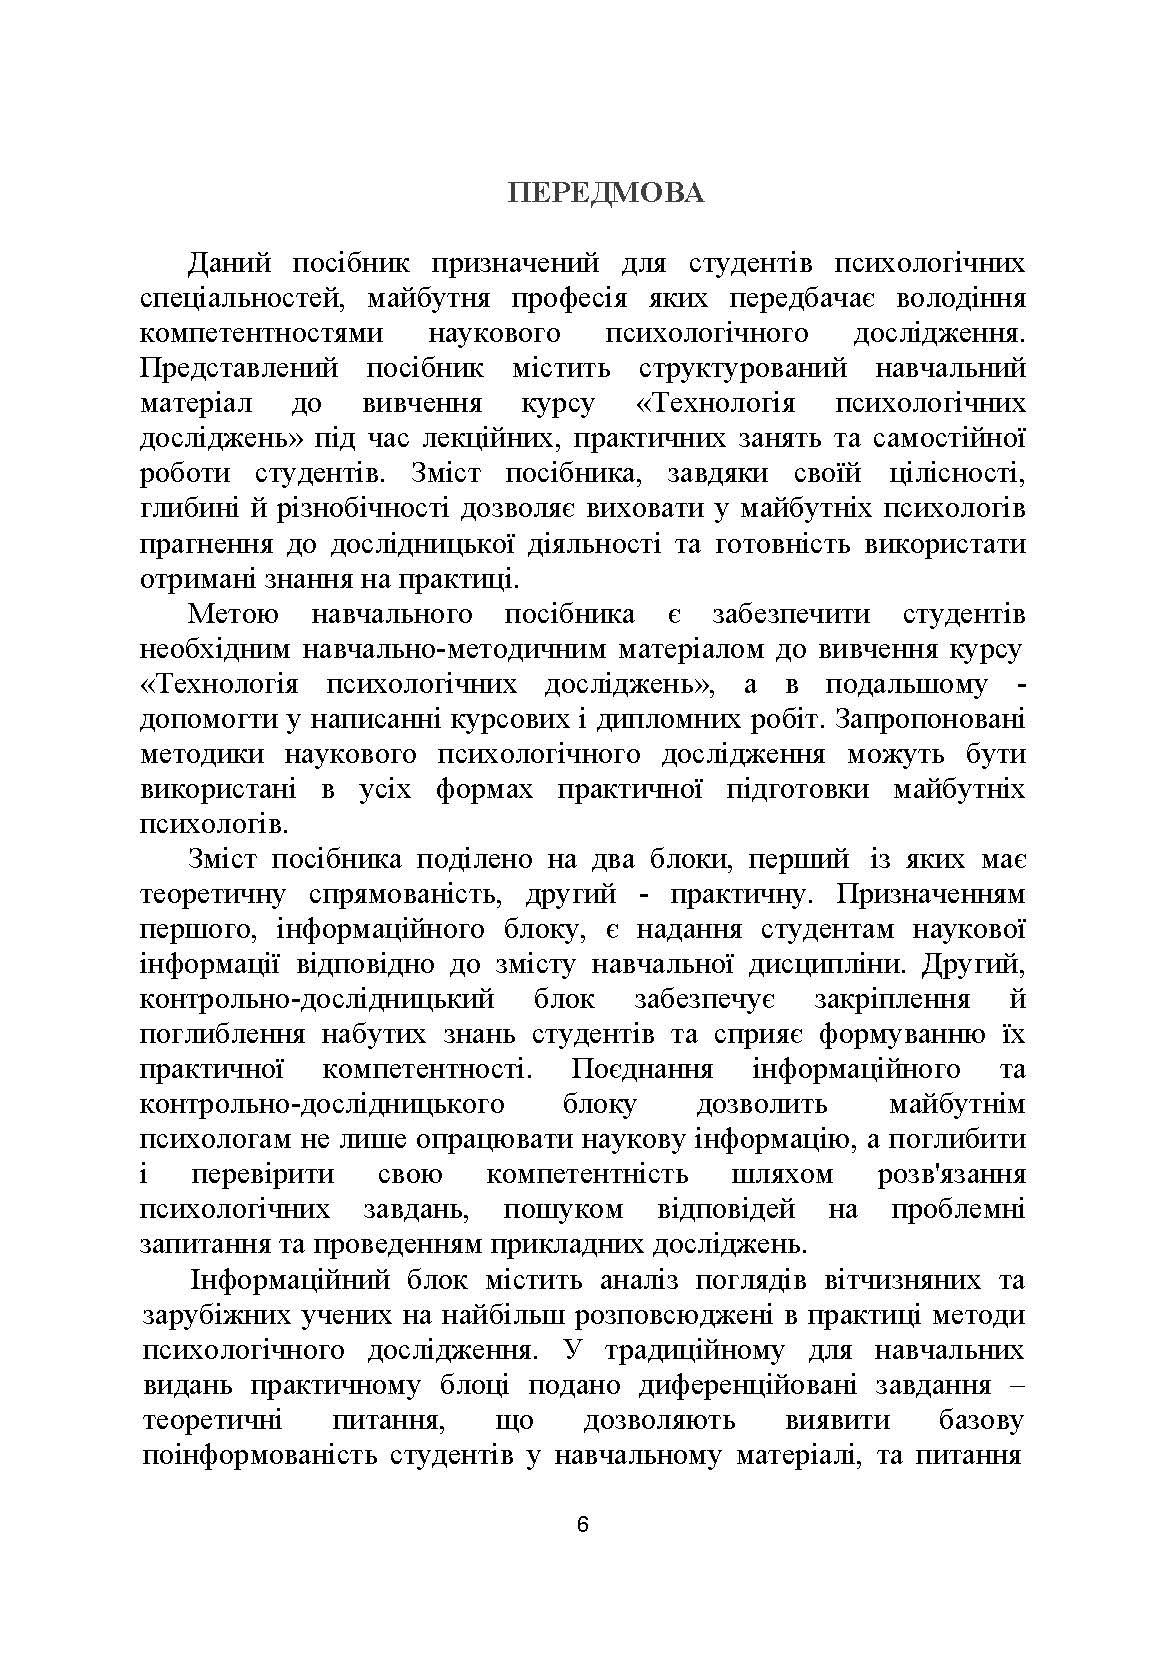 Технологія психологічних досліджень. Столяренко О.Б.  (2022 год). Автор — Столяренко О.Б.. 